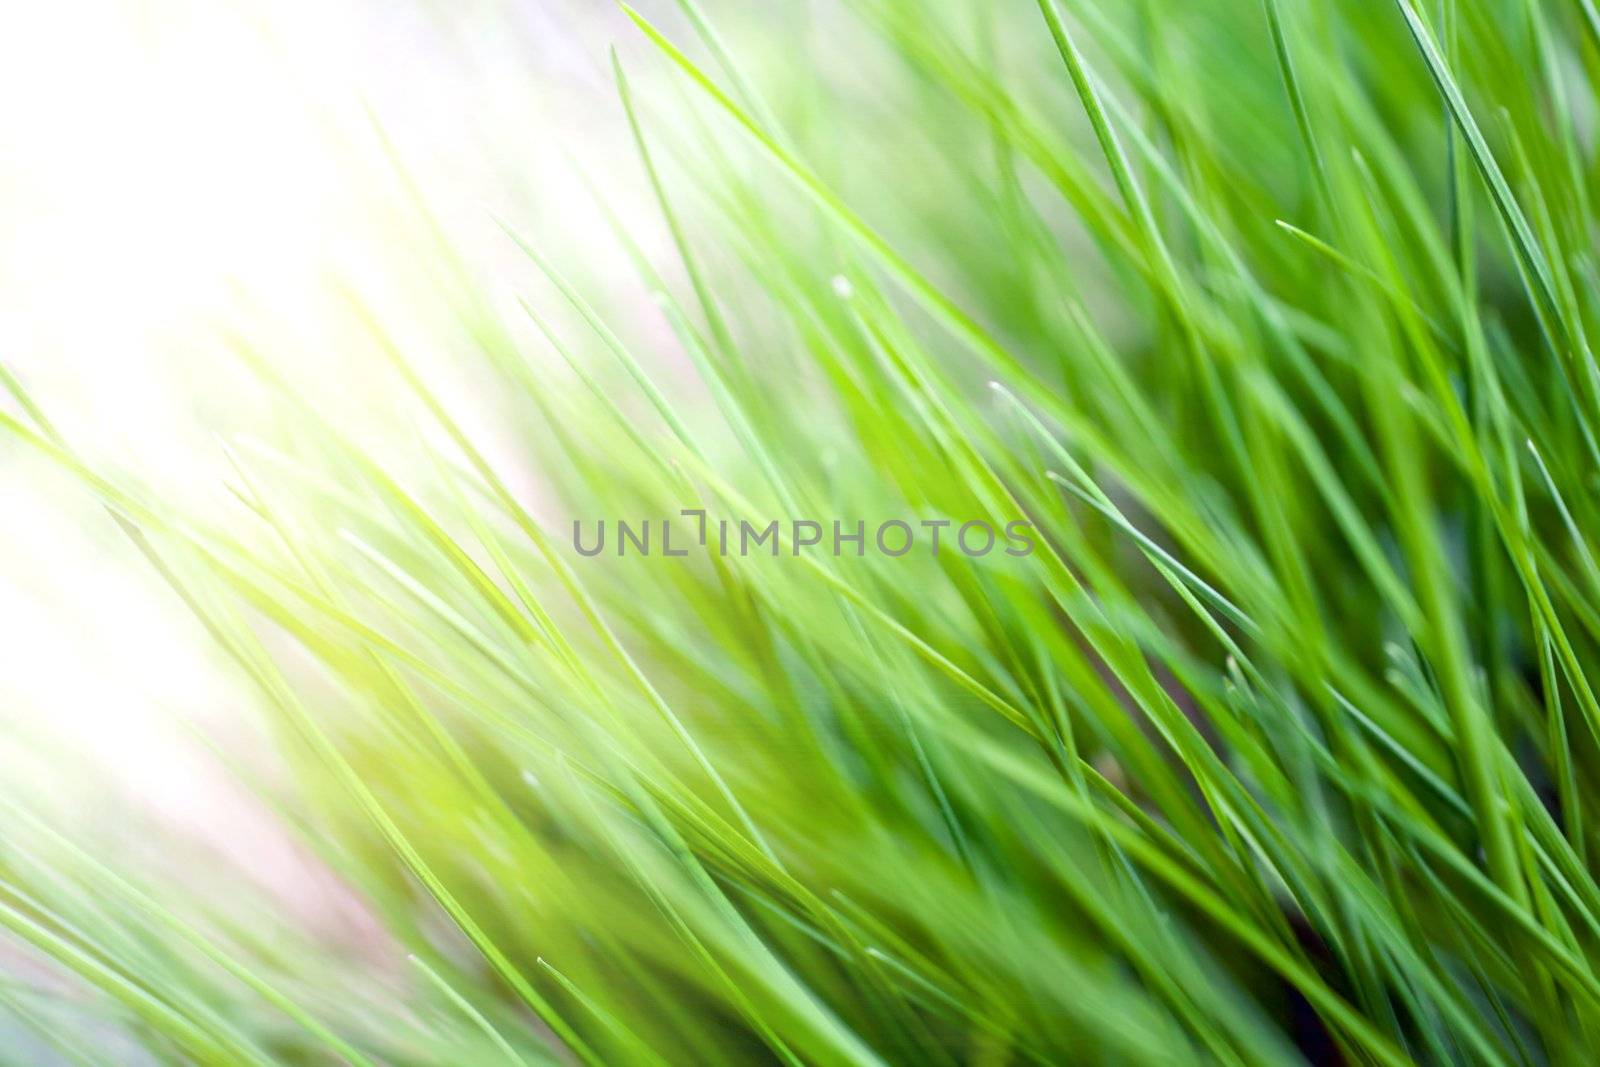 Green grass by velkol